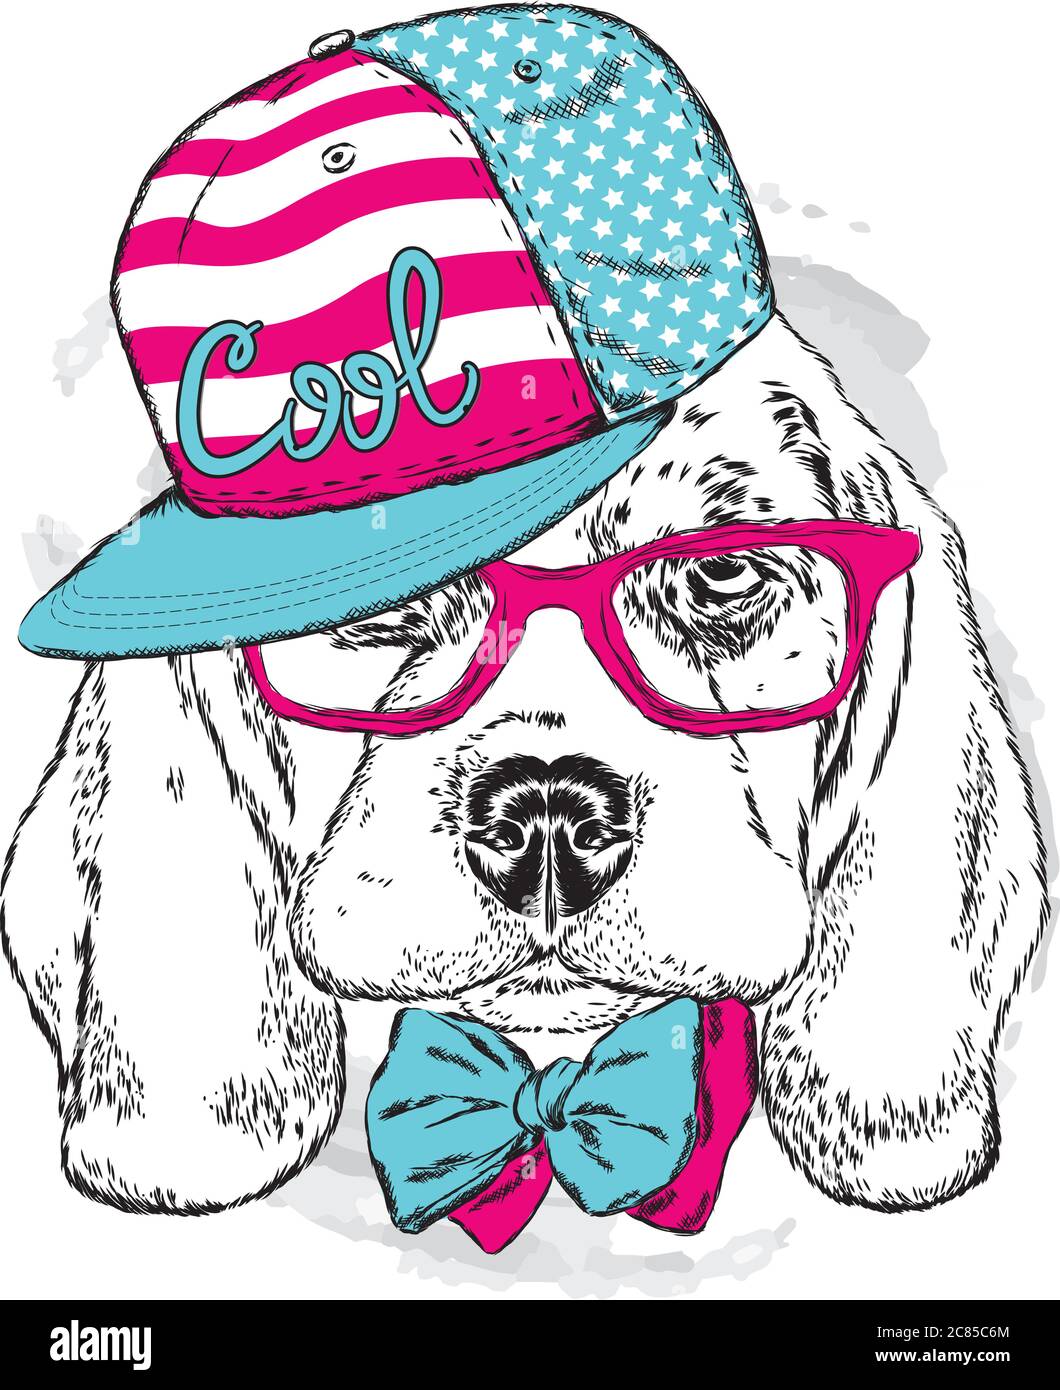 Un beau chien dans un chapeau, des lunettes et une cravate. Illustration vectorielle pour une carte postale ou une affiche, impression pour vêtements. Chiot de race pure. Alabaï ou le Berger Illustration de Vecteur